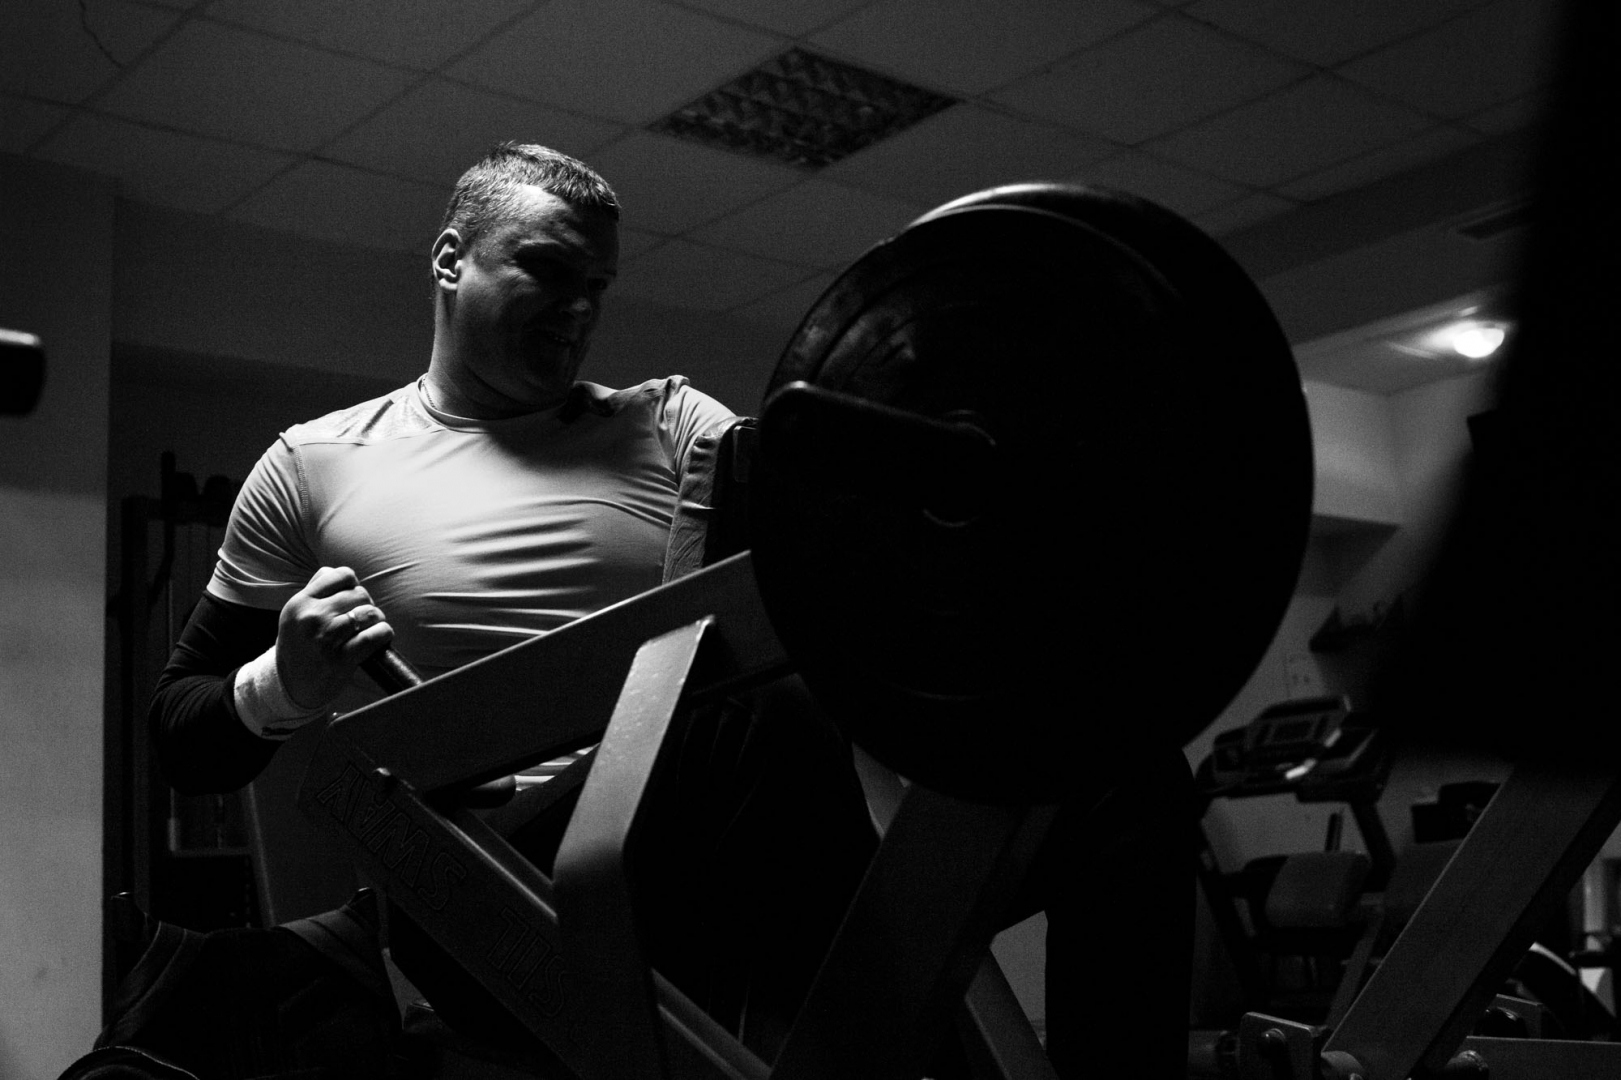 Андрей делает упражнение на развитие мышц спины во время тренировки в тренажерном зале. На соревнованиях спортсменам приходится в течение целого часа держать винтовку весом около 8 кг 